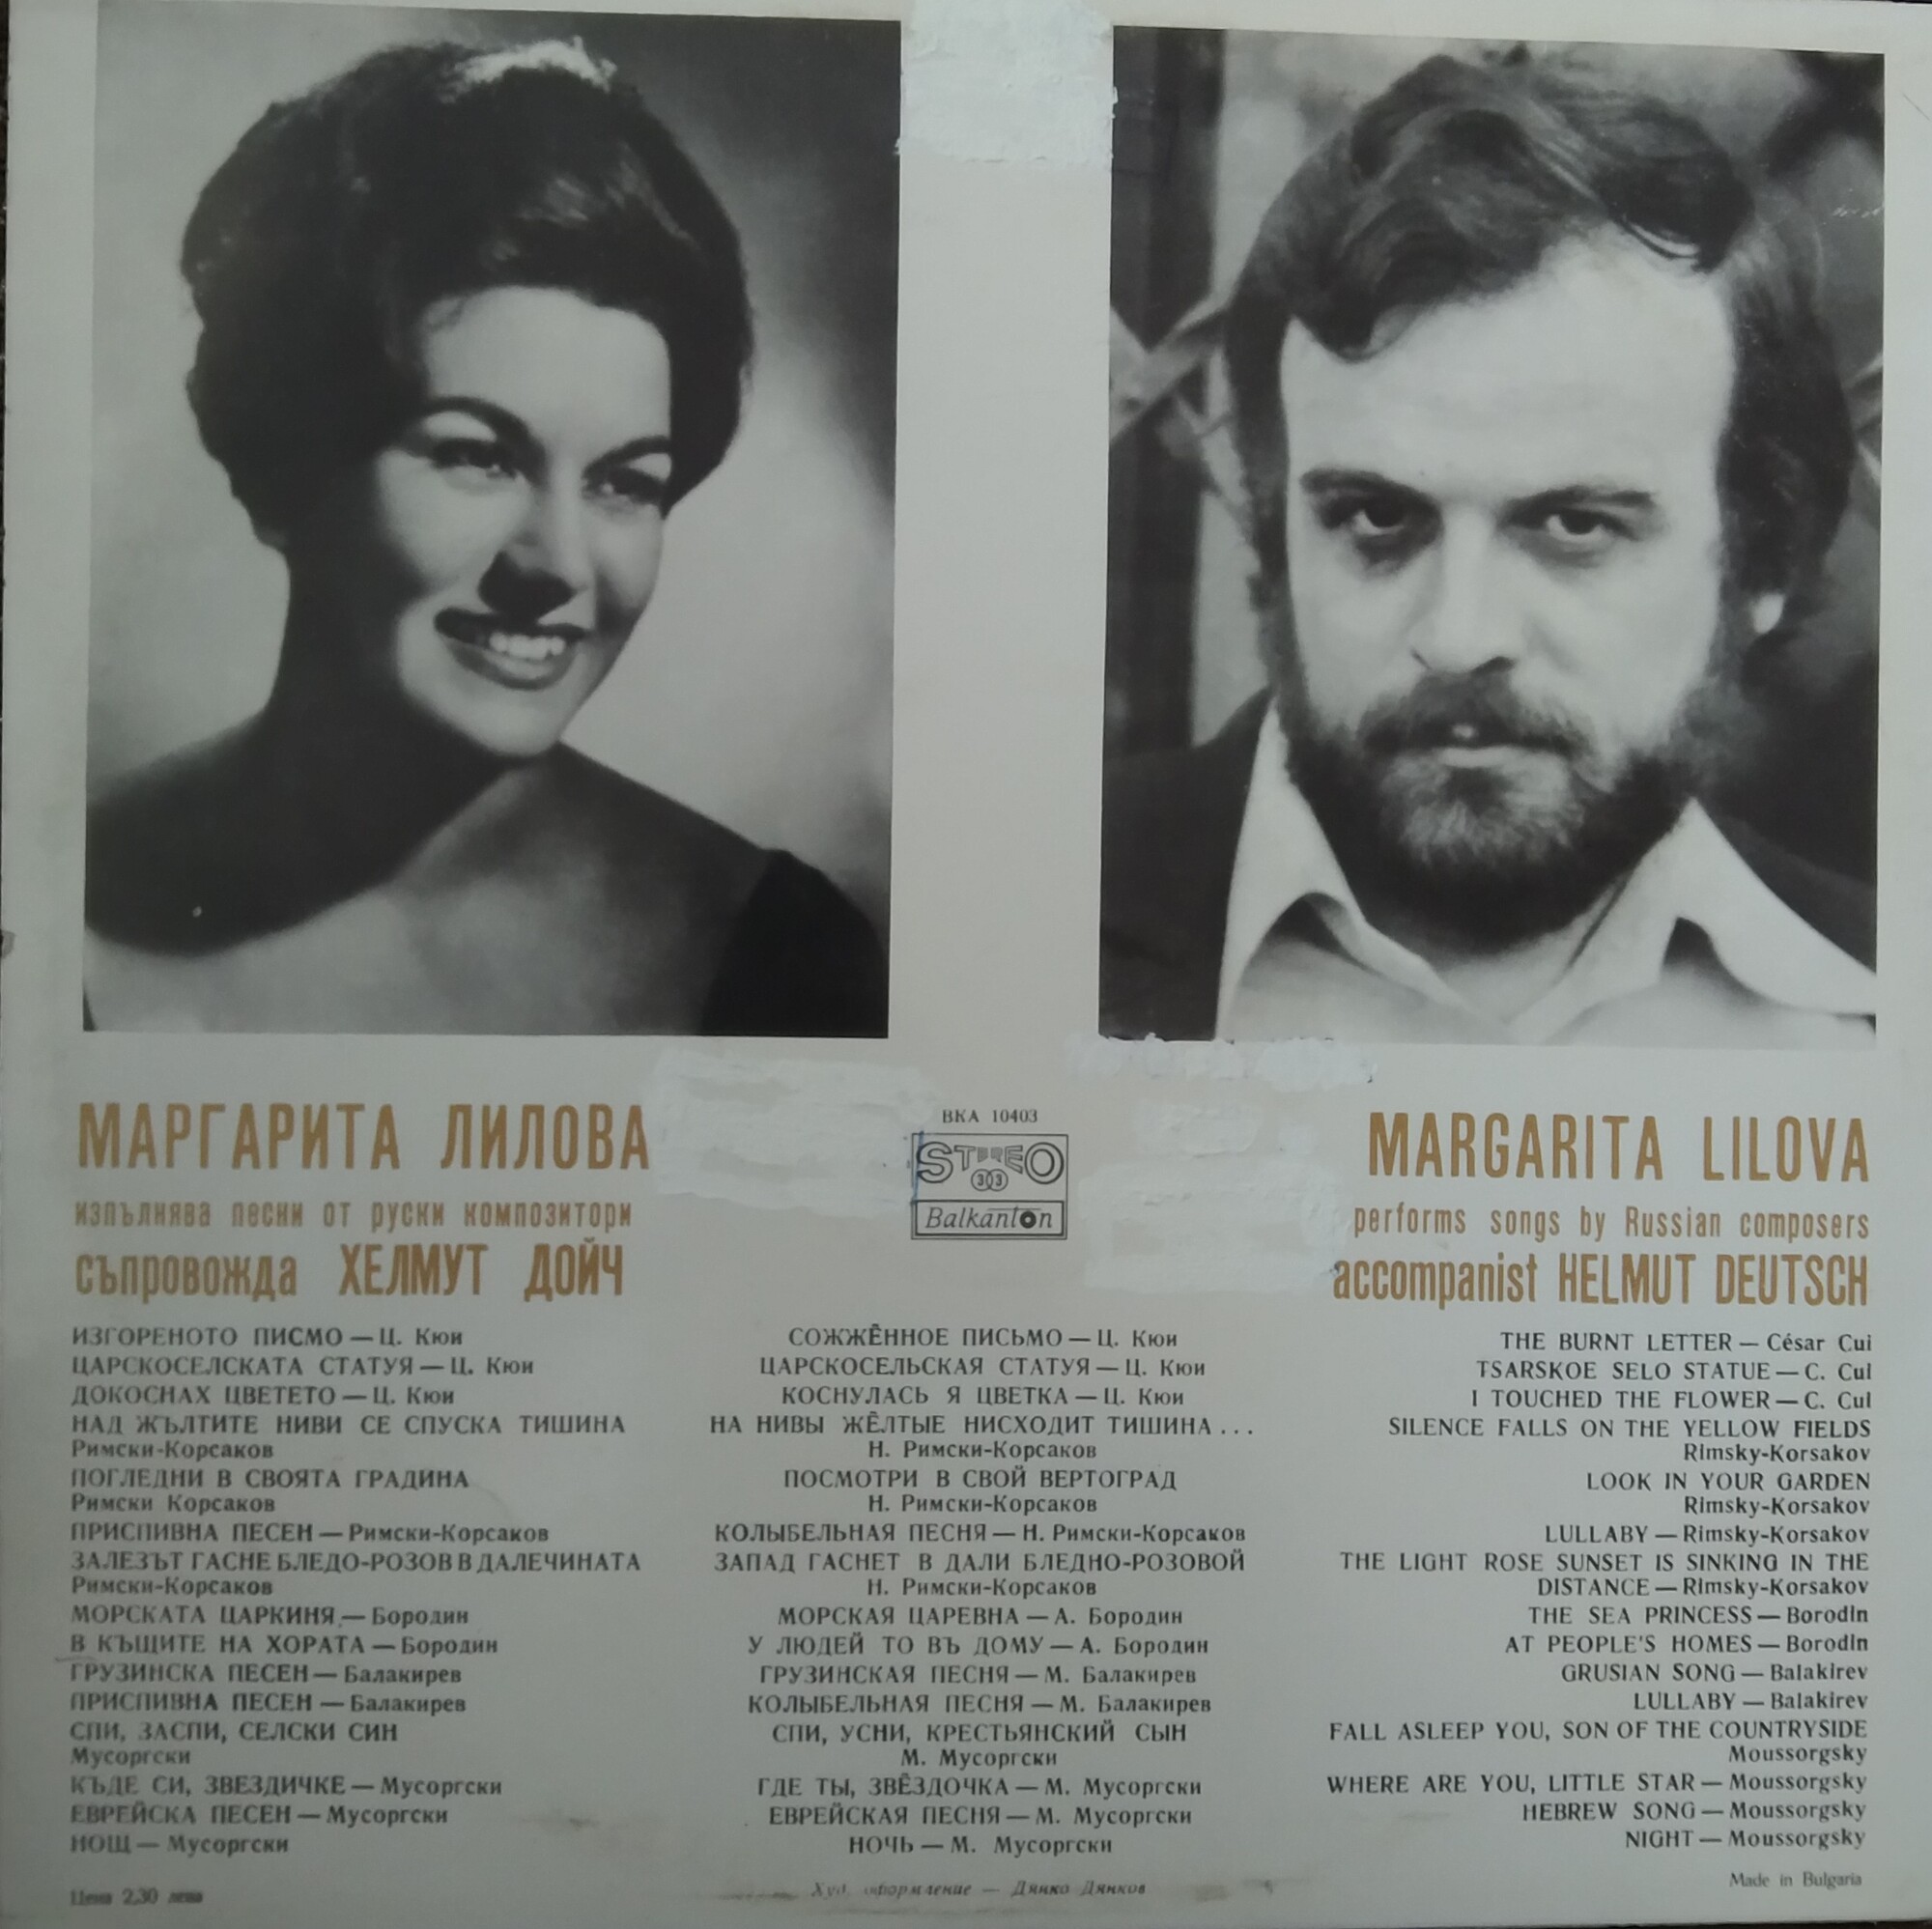 Песни от руски композитори изпълнява Маргарита Лилова - мецосопран; съпровожда Хелмут Дойч - пиано